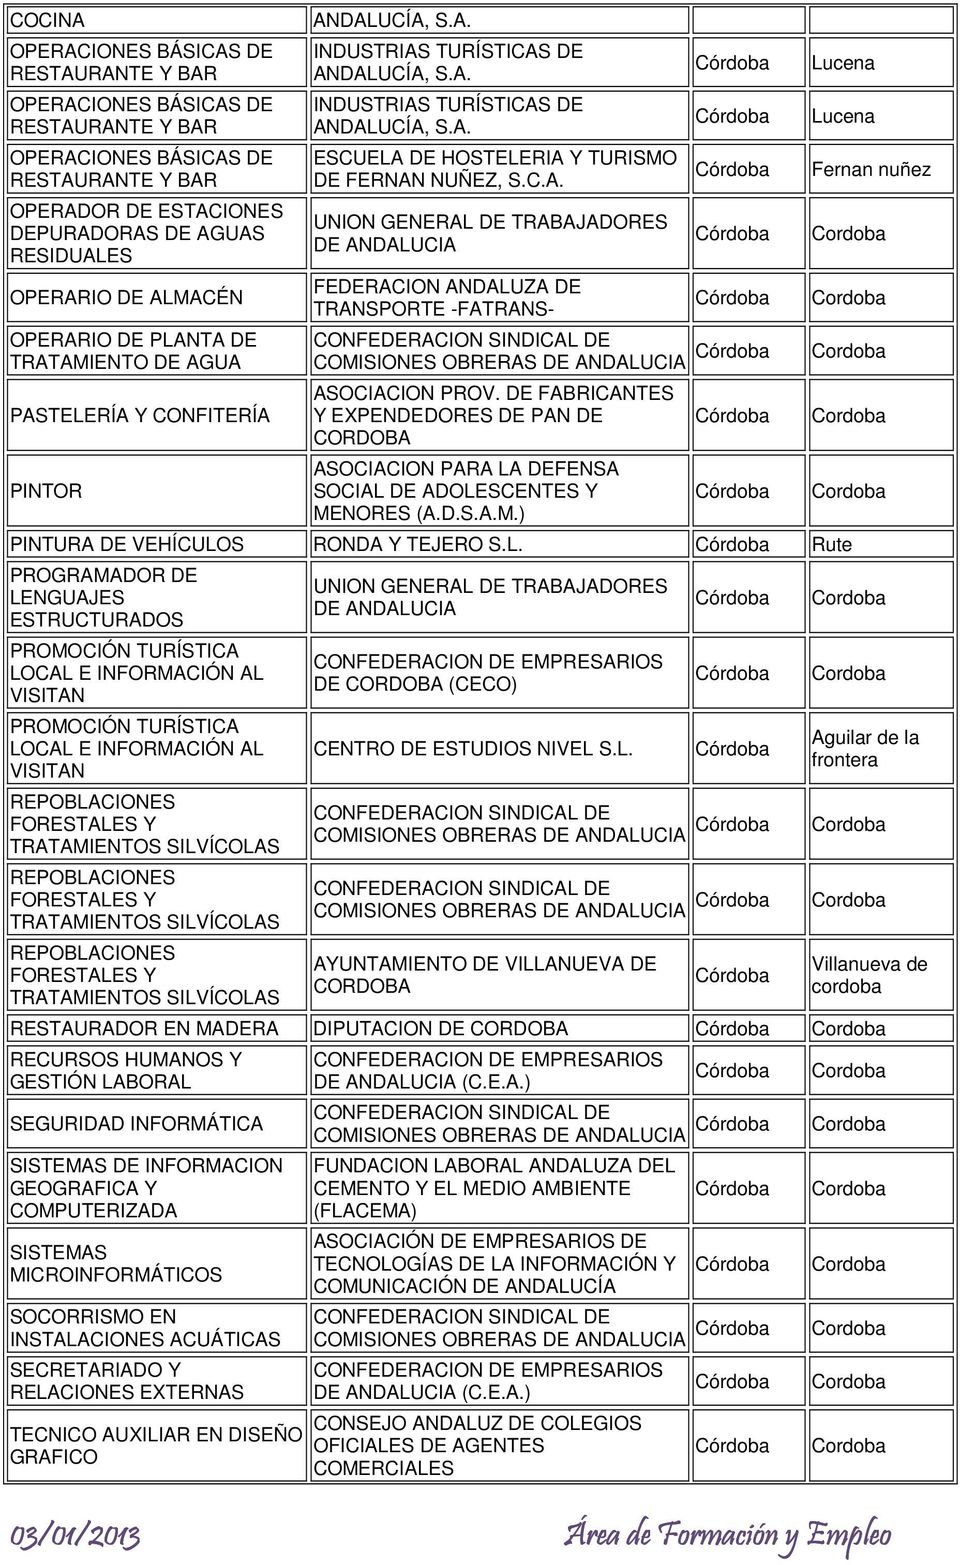 C.A. FEDERACION ANDALUZA DE TRANSPORTE -FATRANS- COMISIONES OBRERAS ASOCIACION PROV. DE FABRICANTES Y EXPENDEDORES DE PAN DE CORDOBA ASOCIACION PARA LA DEFENSA SOCIAL DE ADOLESCENTES Y MENORES (A.D.S.A.M.) PINTURA DE VEHÍCULOS RONDA Y TEJERO S.